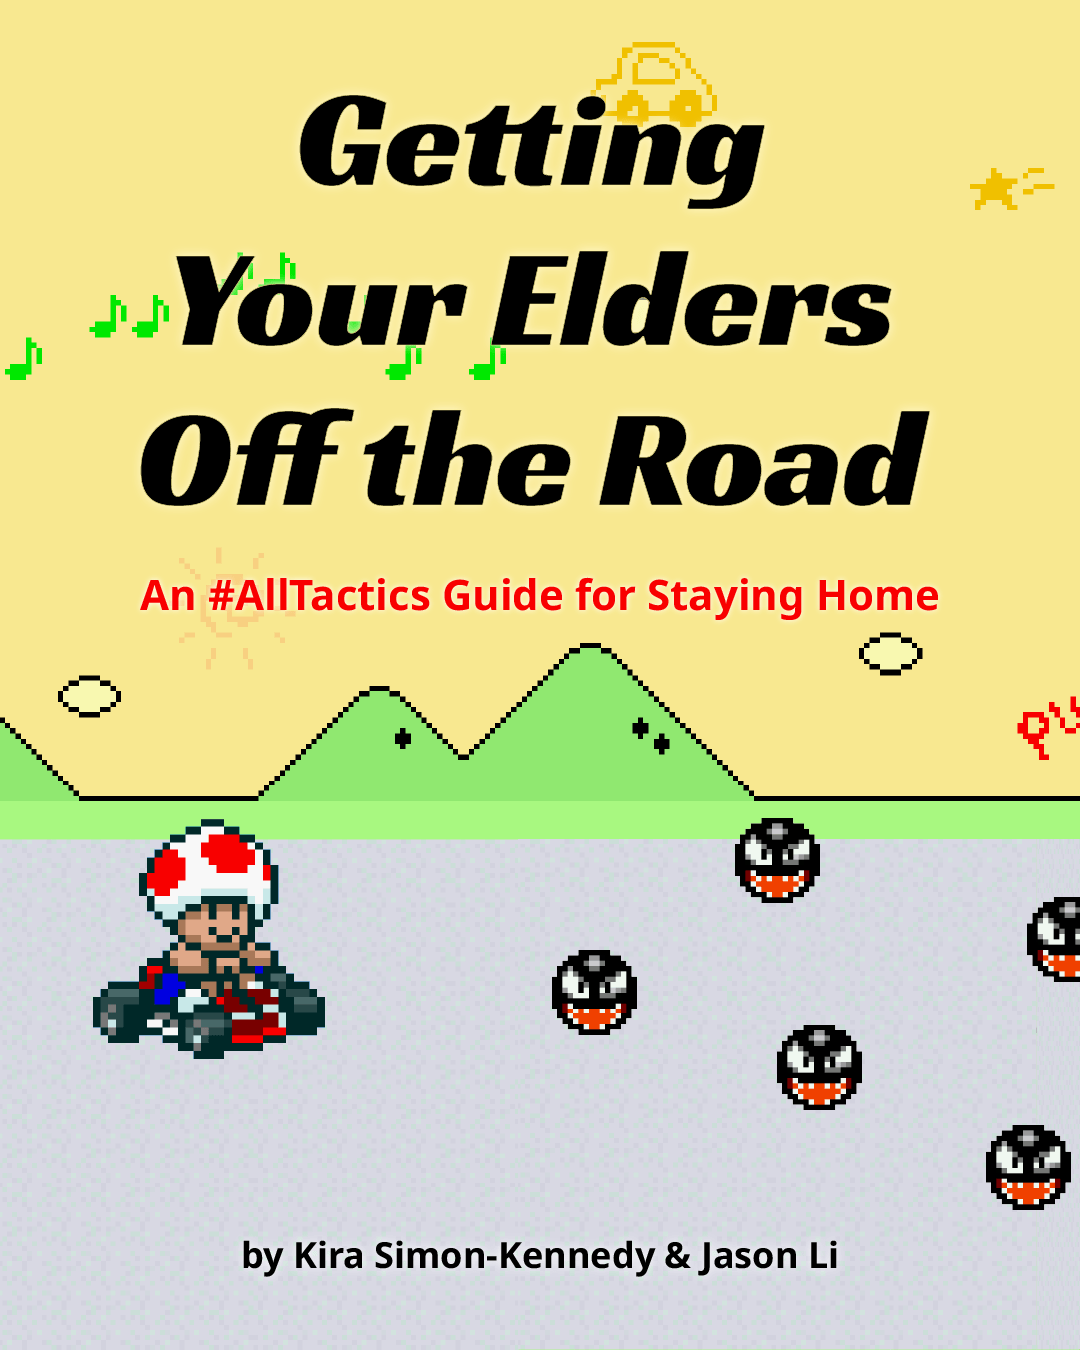 Elders guide image 1/10